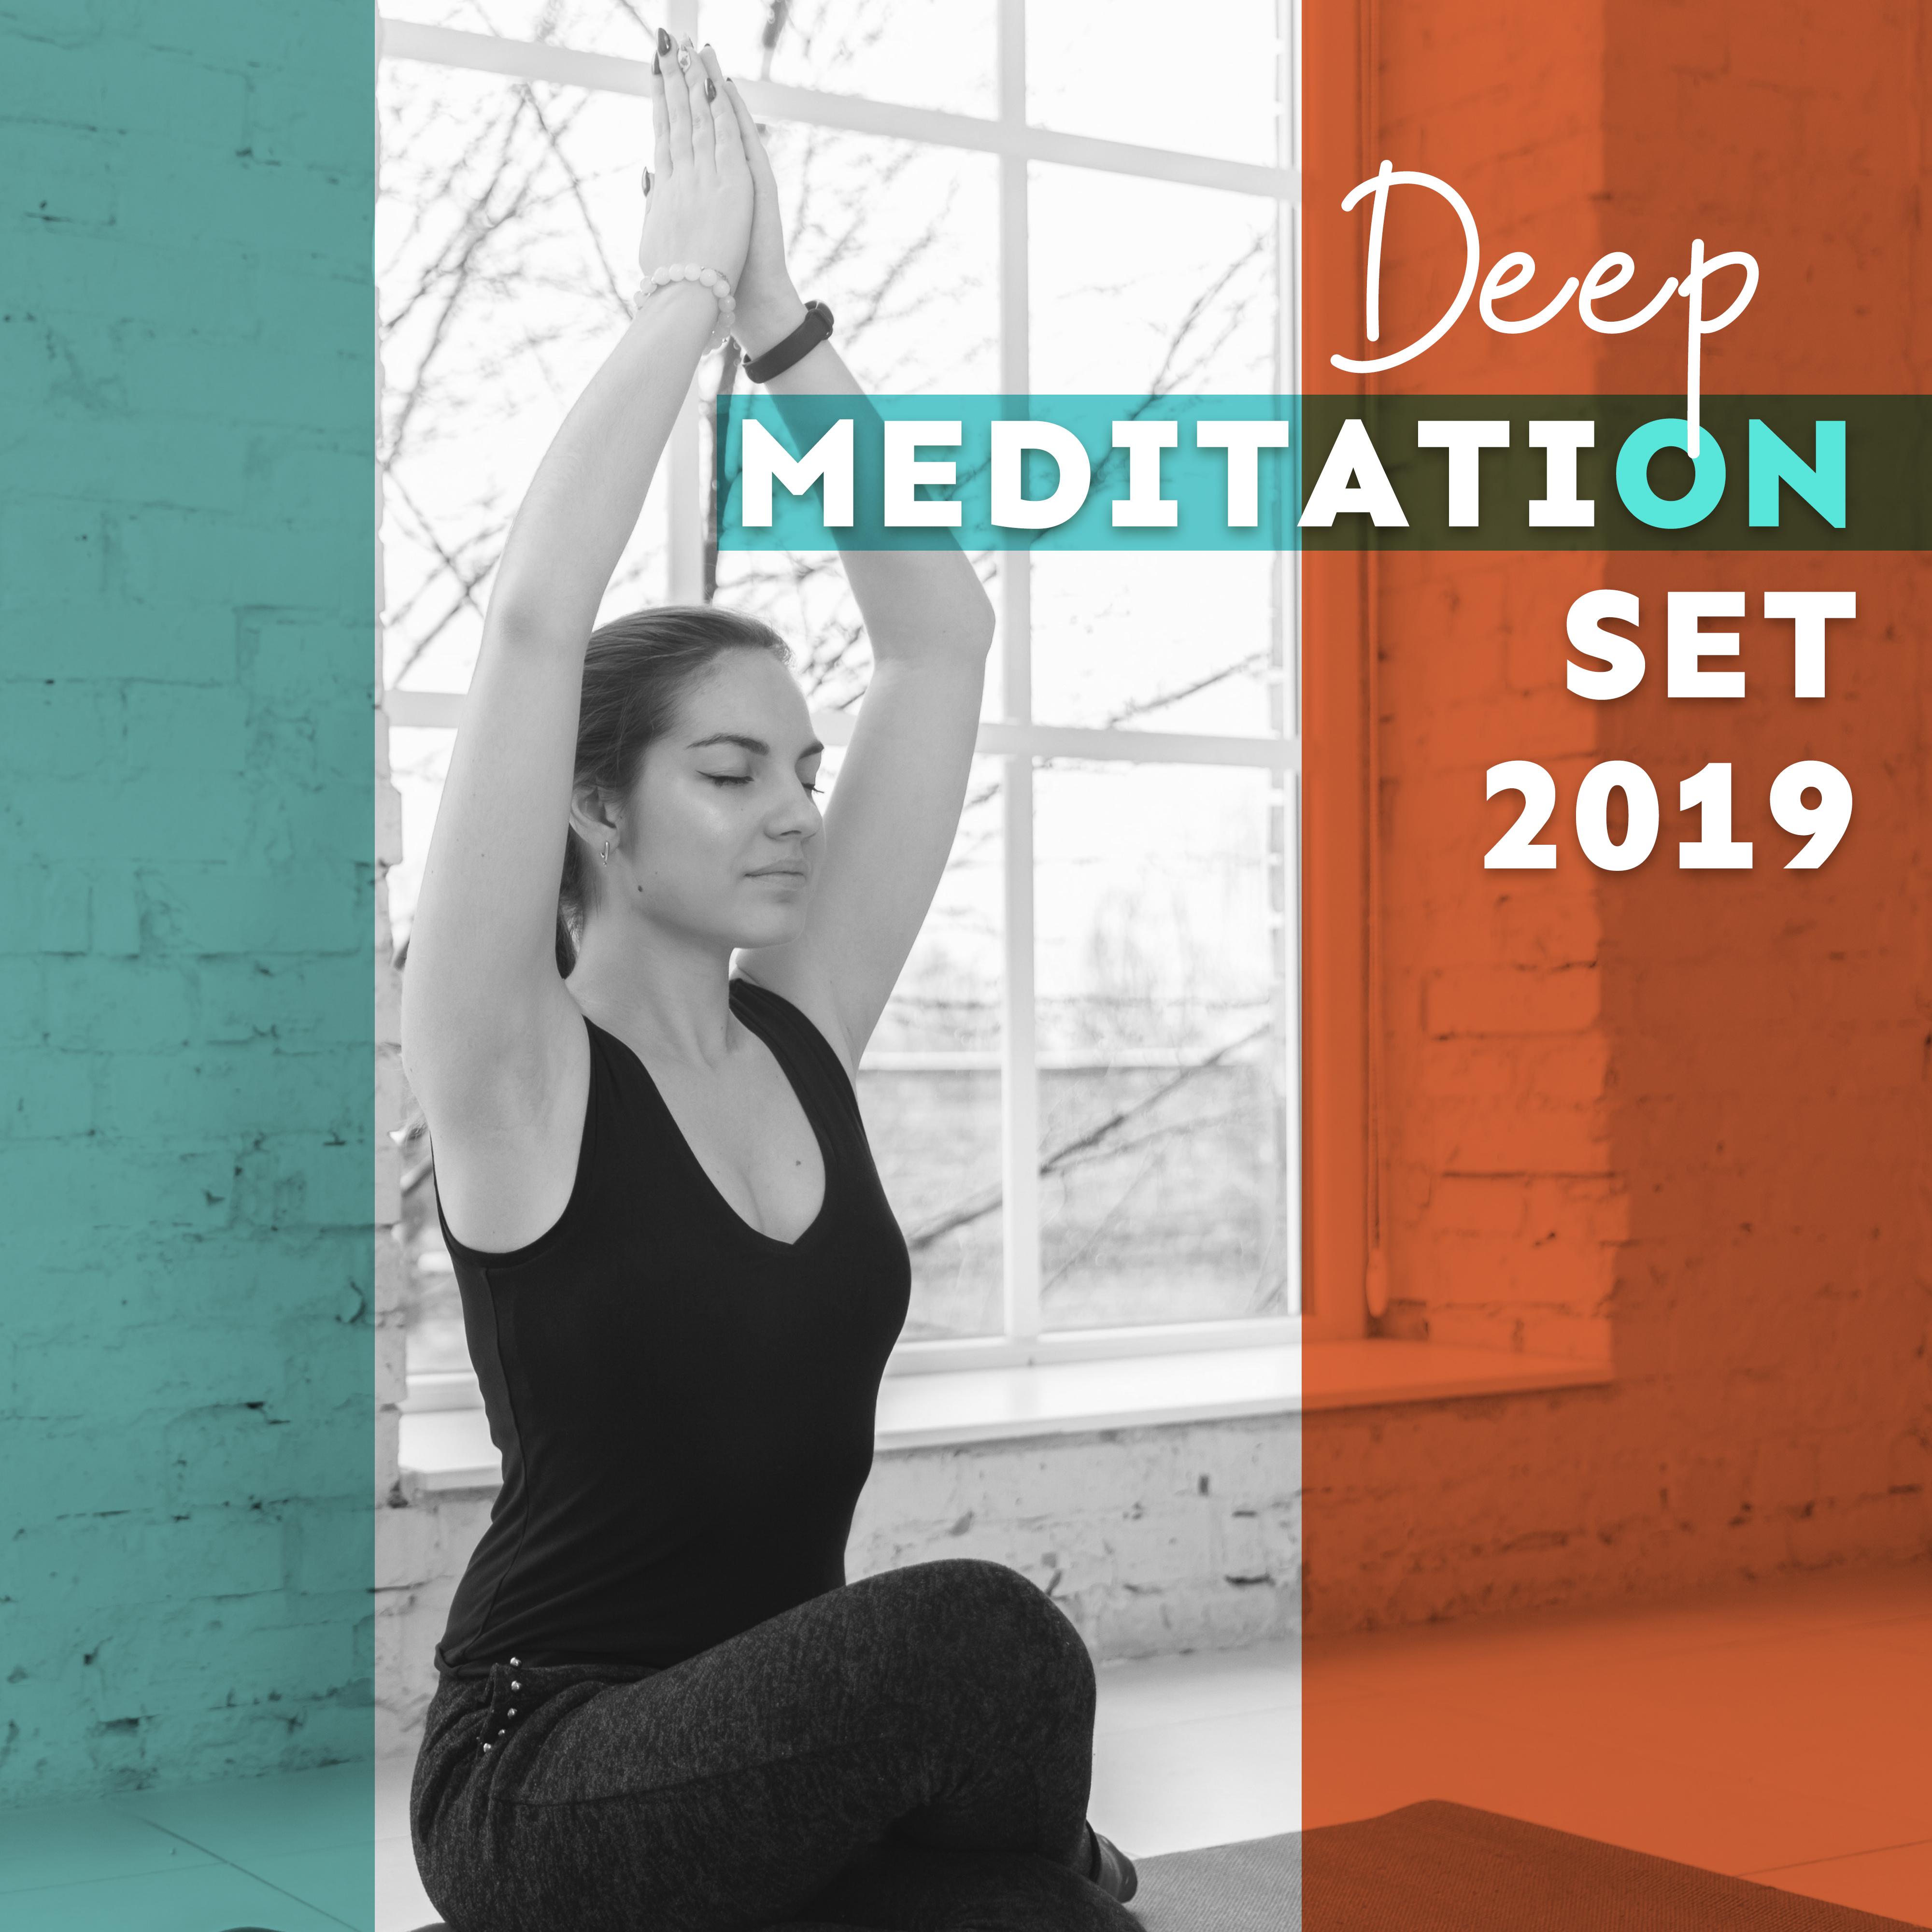 Deep Meditation Set 2019